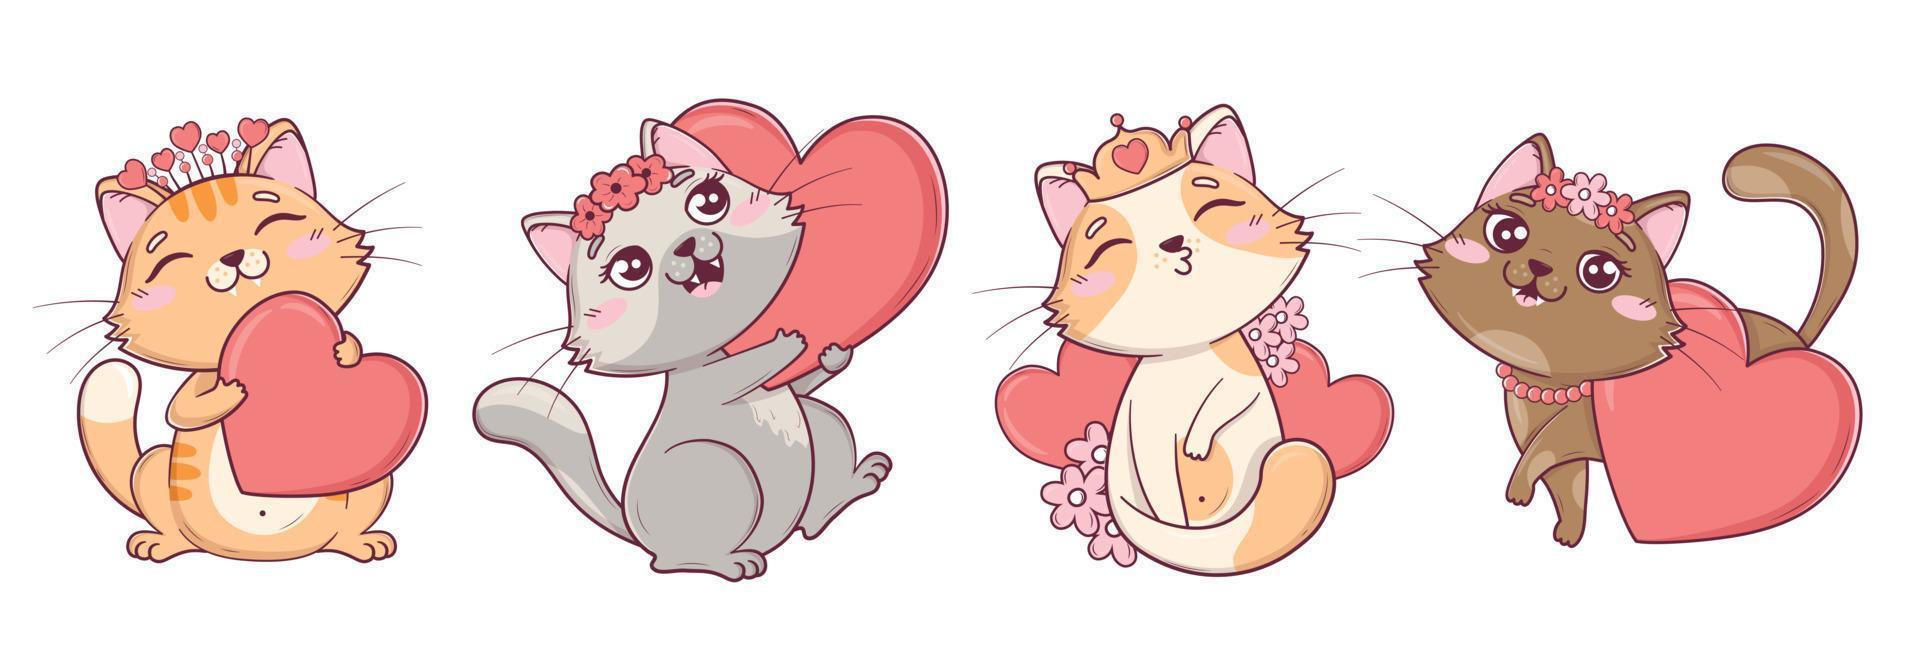 colección de lindos gatos kawaii de San Valentín en diferentes poses con corazones y flores vector